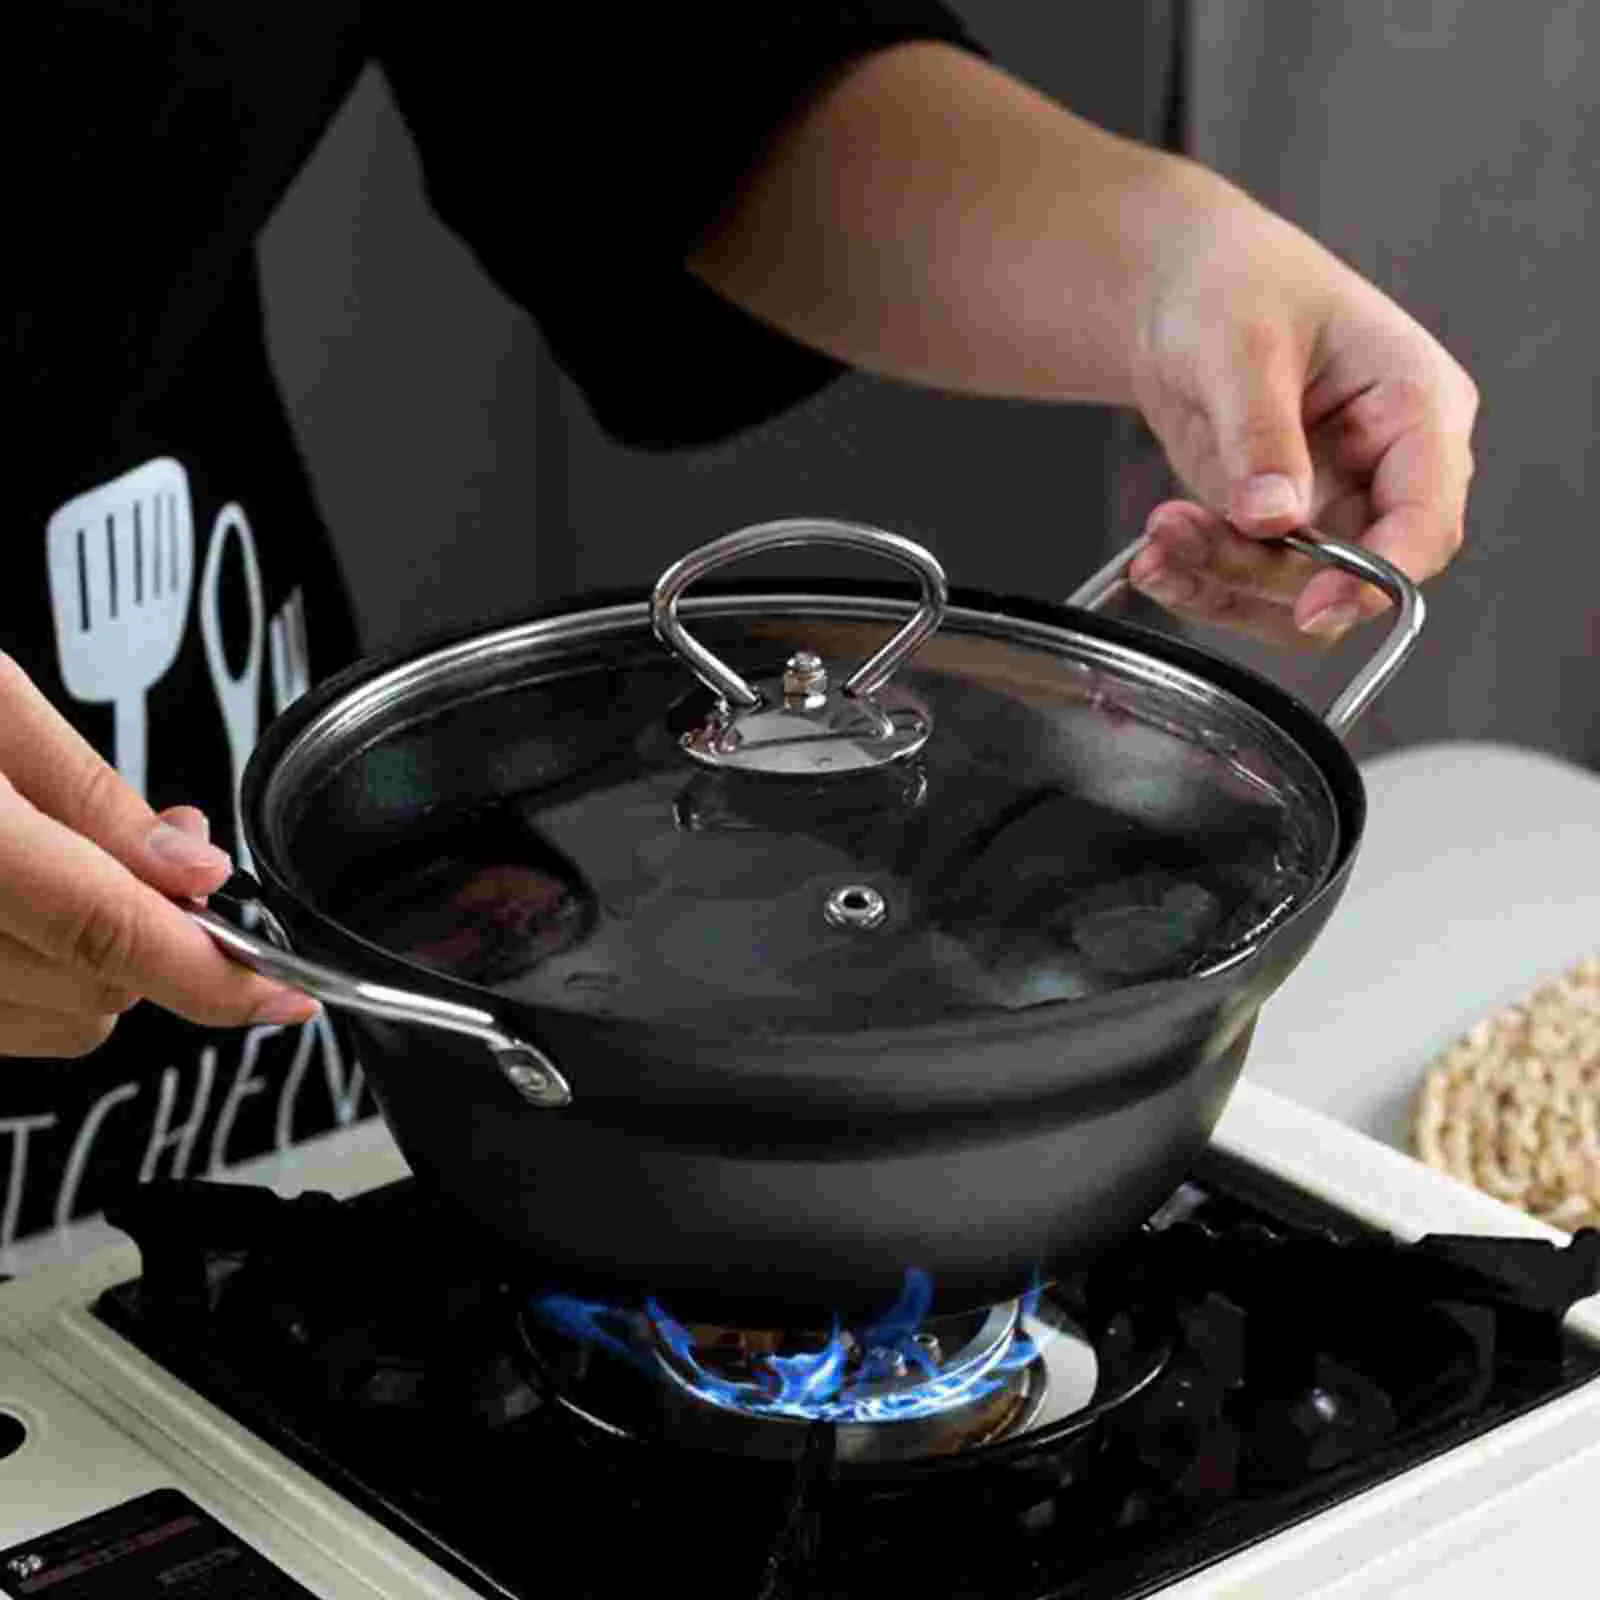 https://ae01.alicdn.com/kf/S3622b5cffffb413fa0ac4550d2e059e0r/Fryer-Pan-Frying-Pot-Deep-Tempura-Rackdrainer-Basket-Oil-Fry-Japanese-French-Fries-Strainer-Filter-Kitchen.jpg